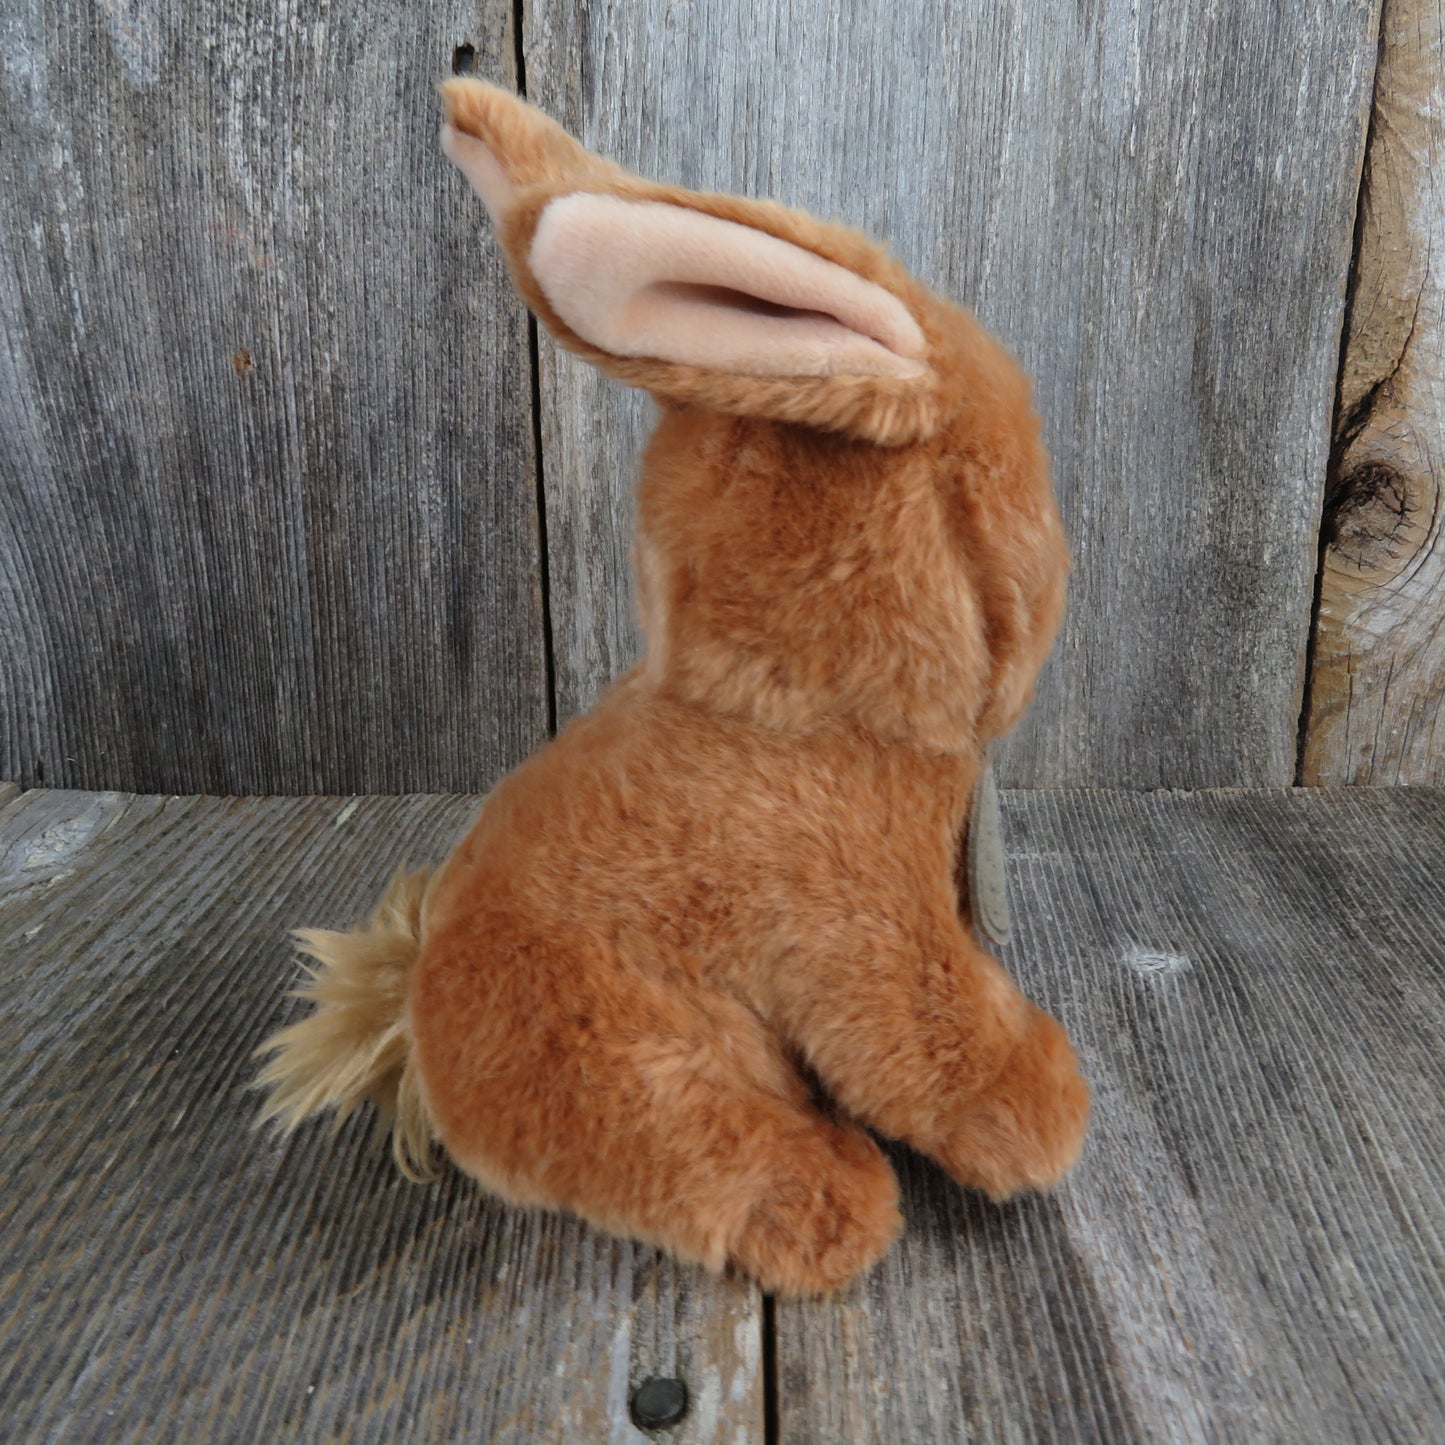 Bunny Rabbit Plush Russ Yomiko Brown Life Like Stuffed Animal Baby Sad Eyes Easter Bunny Gift - At Grandma's Table